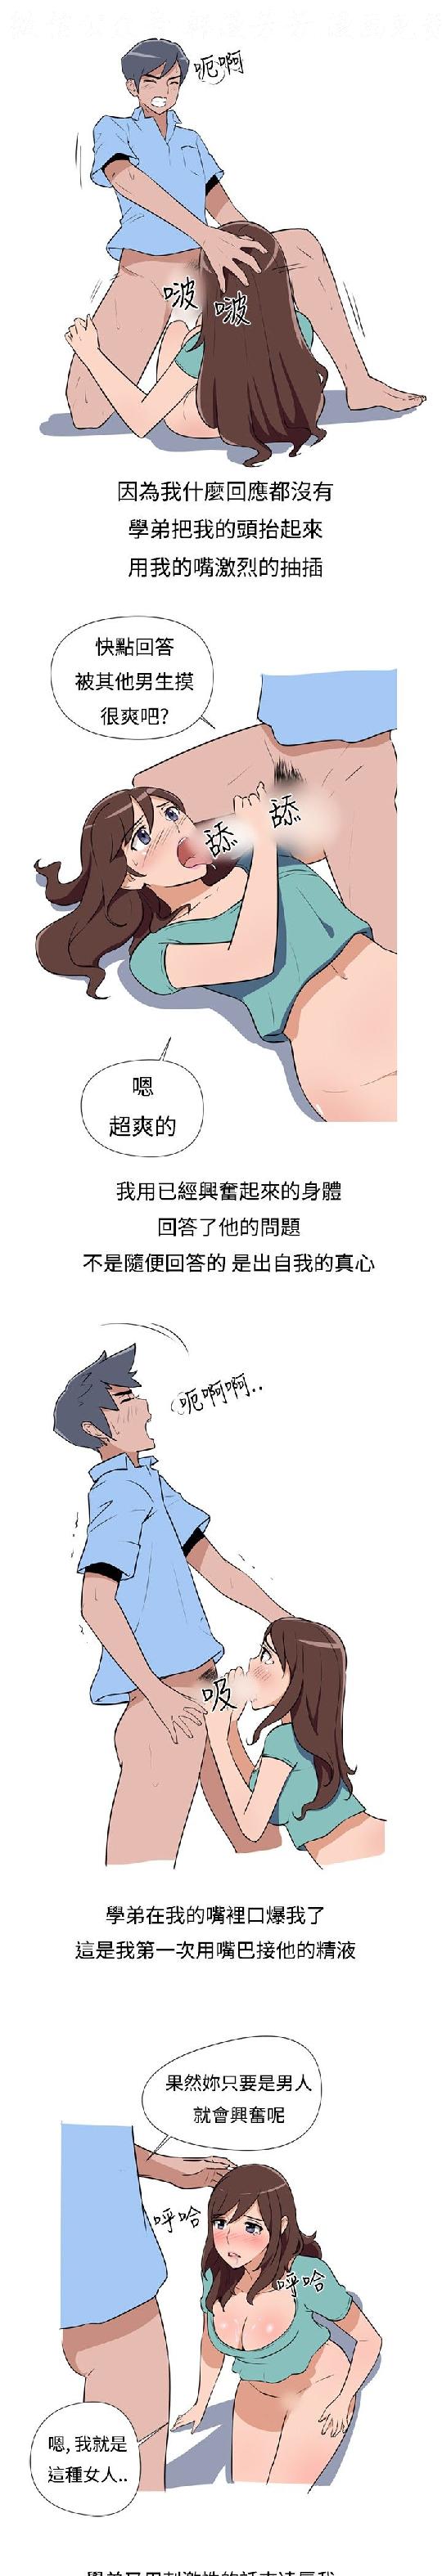 調教女大生【中文】 page 46 full